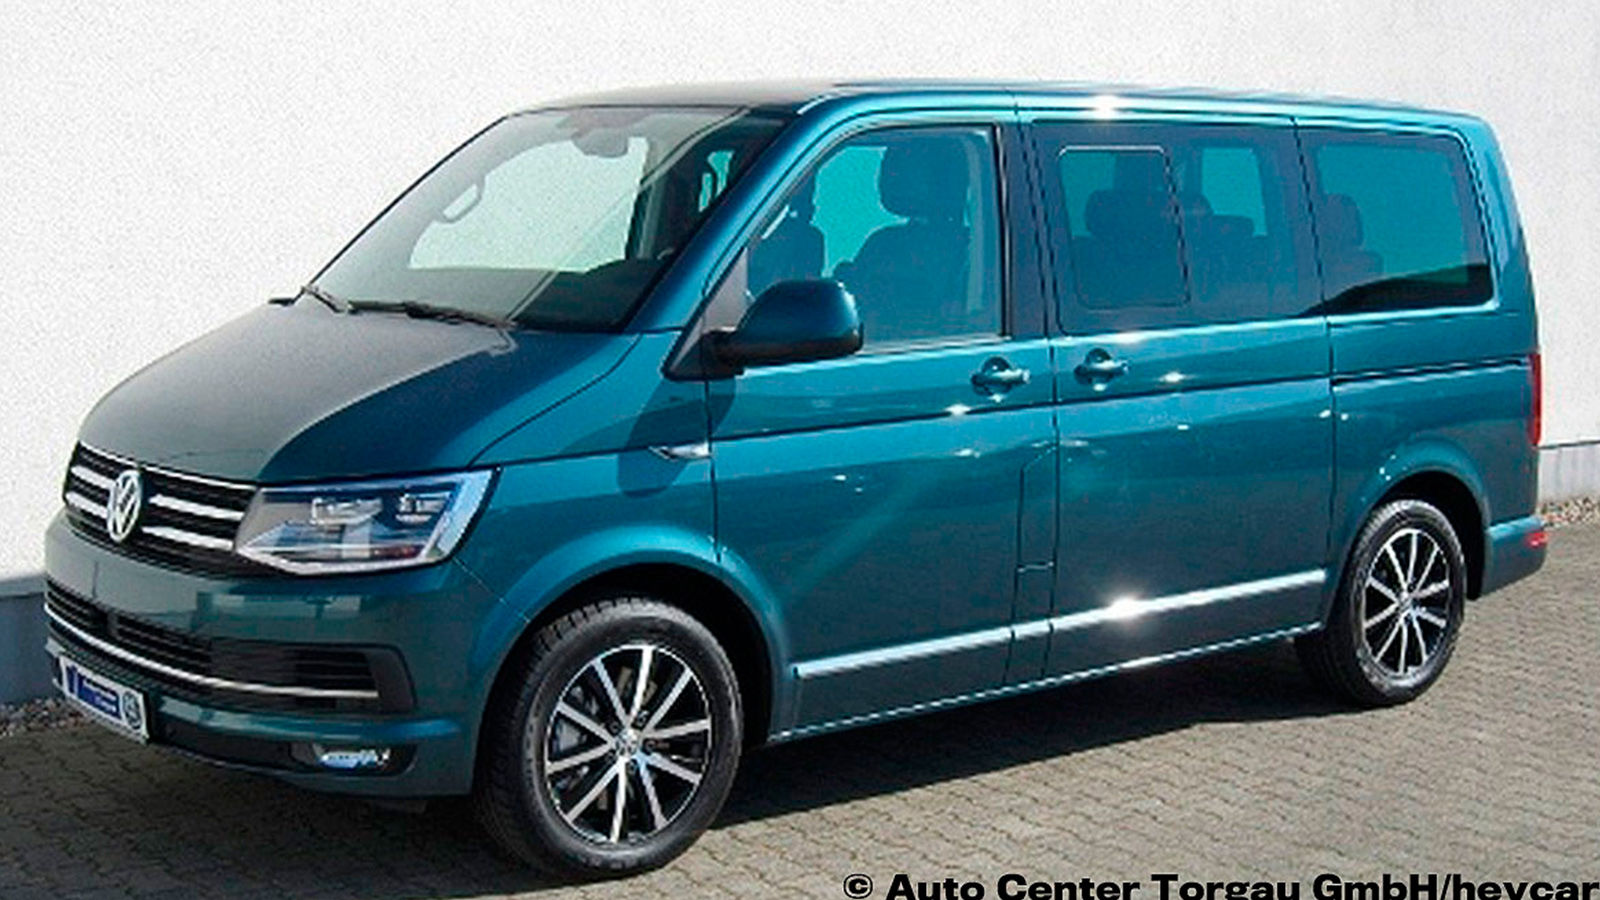 VW T6 Multivan (2015): gebraucht - Preis - Bulli - Ausstattung - Info -  AUTO BILD